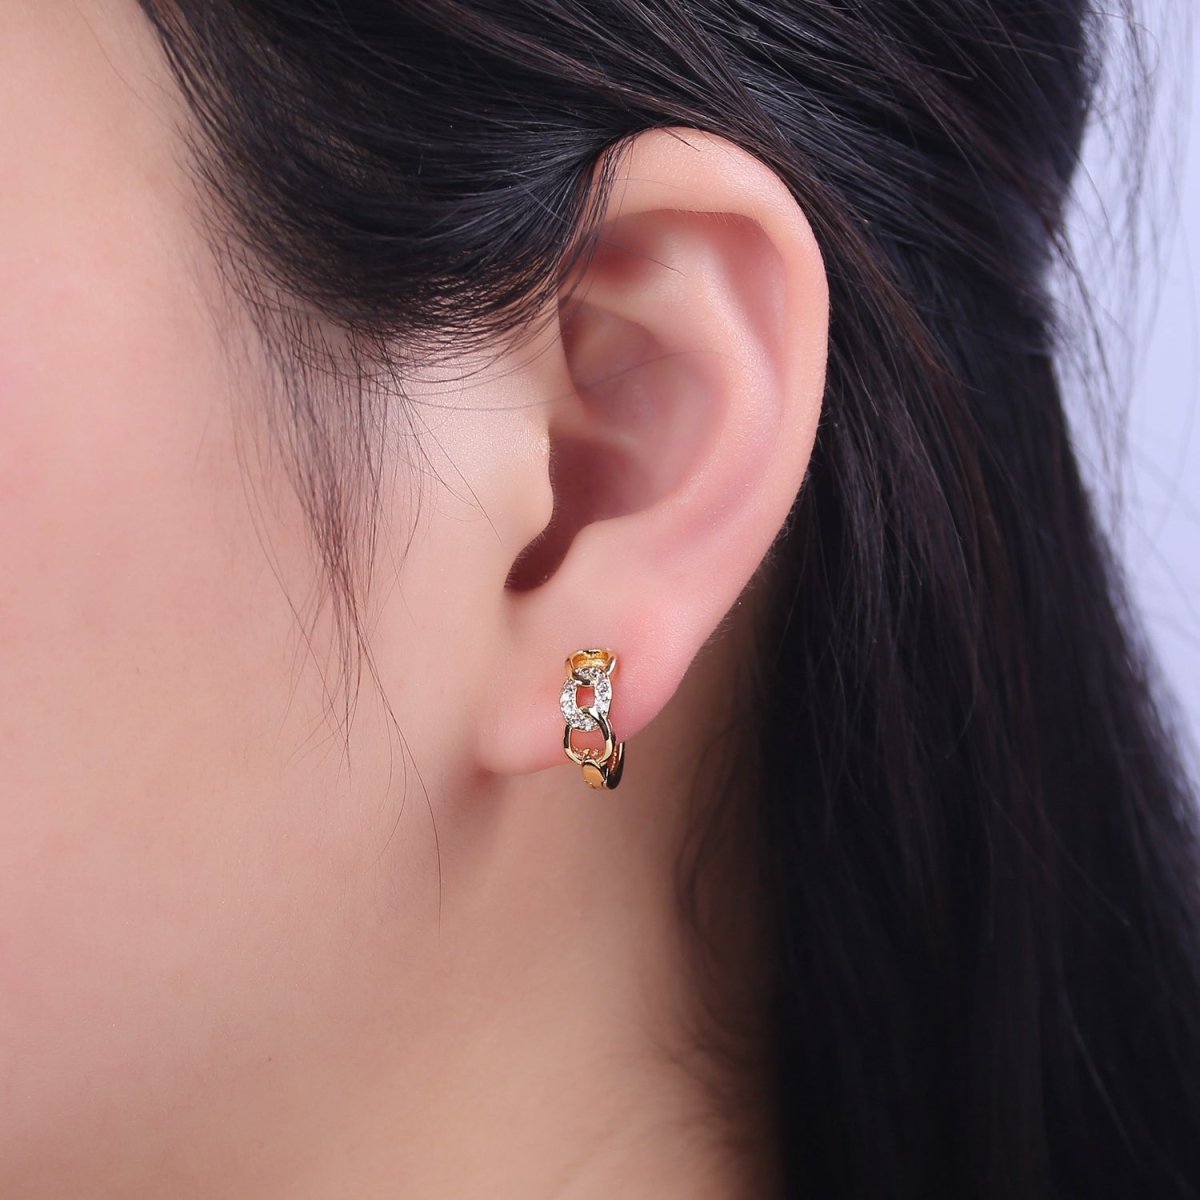 Mini chain link huggie hoop earrings in gold Cartilage earrings • 12mm Tragus hoops • Dainty gold hoop T-366 - DLUXCA